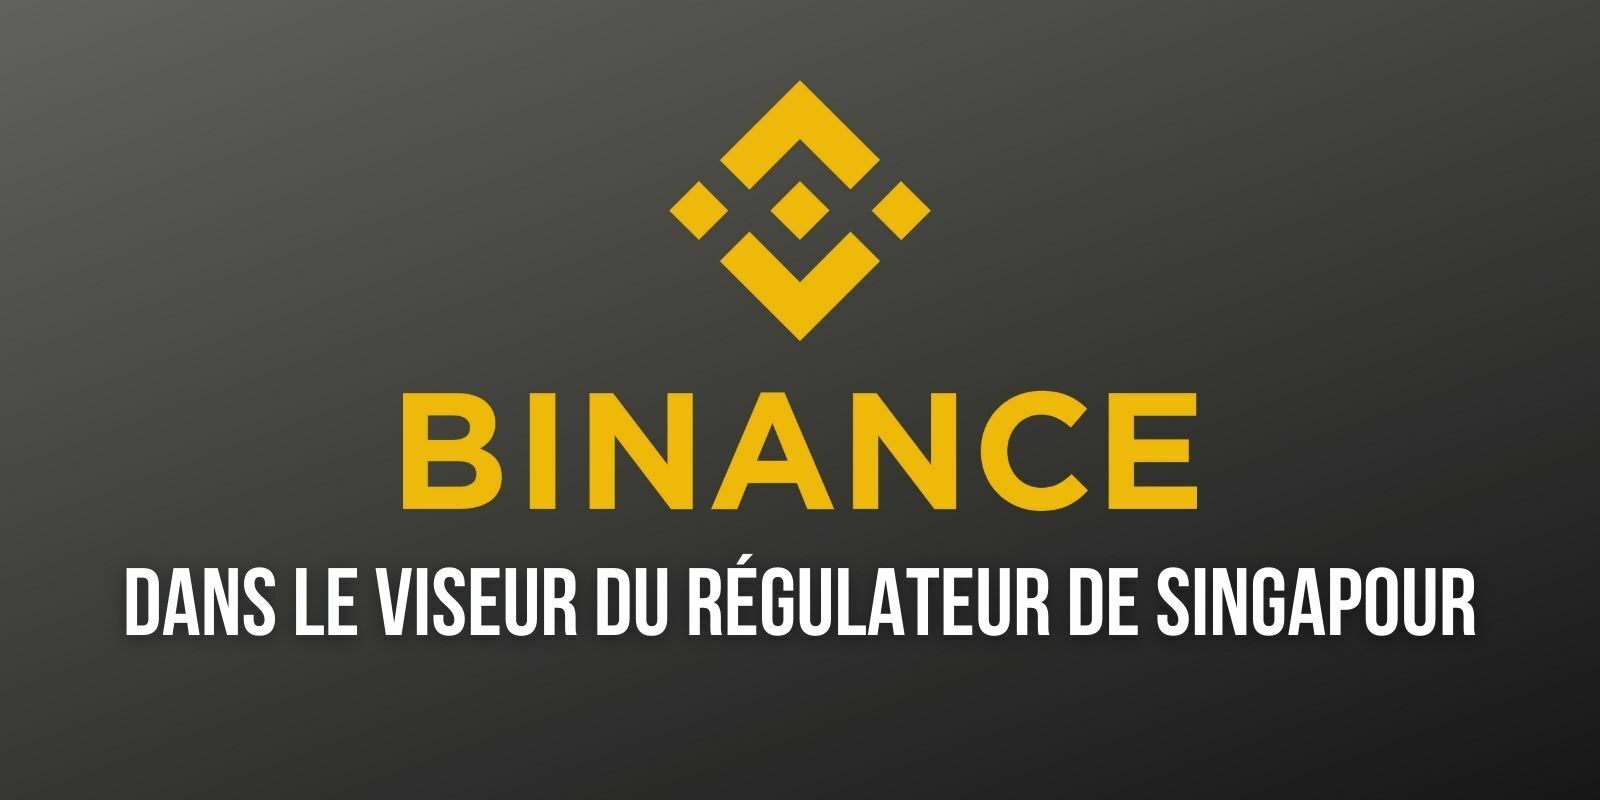 Binance.com n'est pas autorisée à Singapour, met en garde le régulateur financier